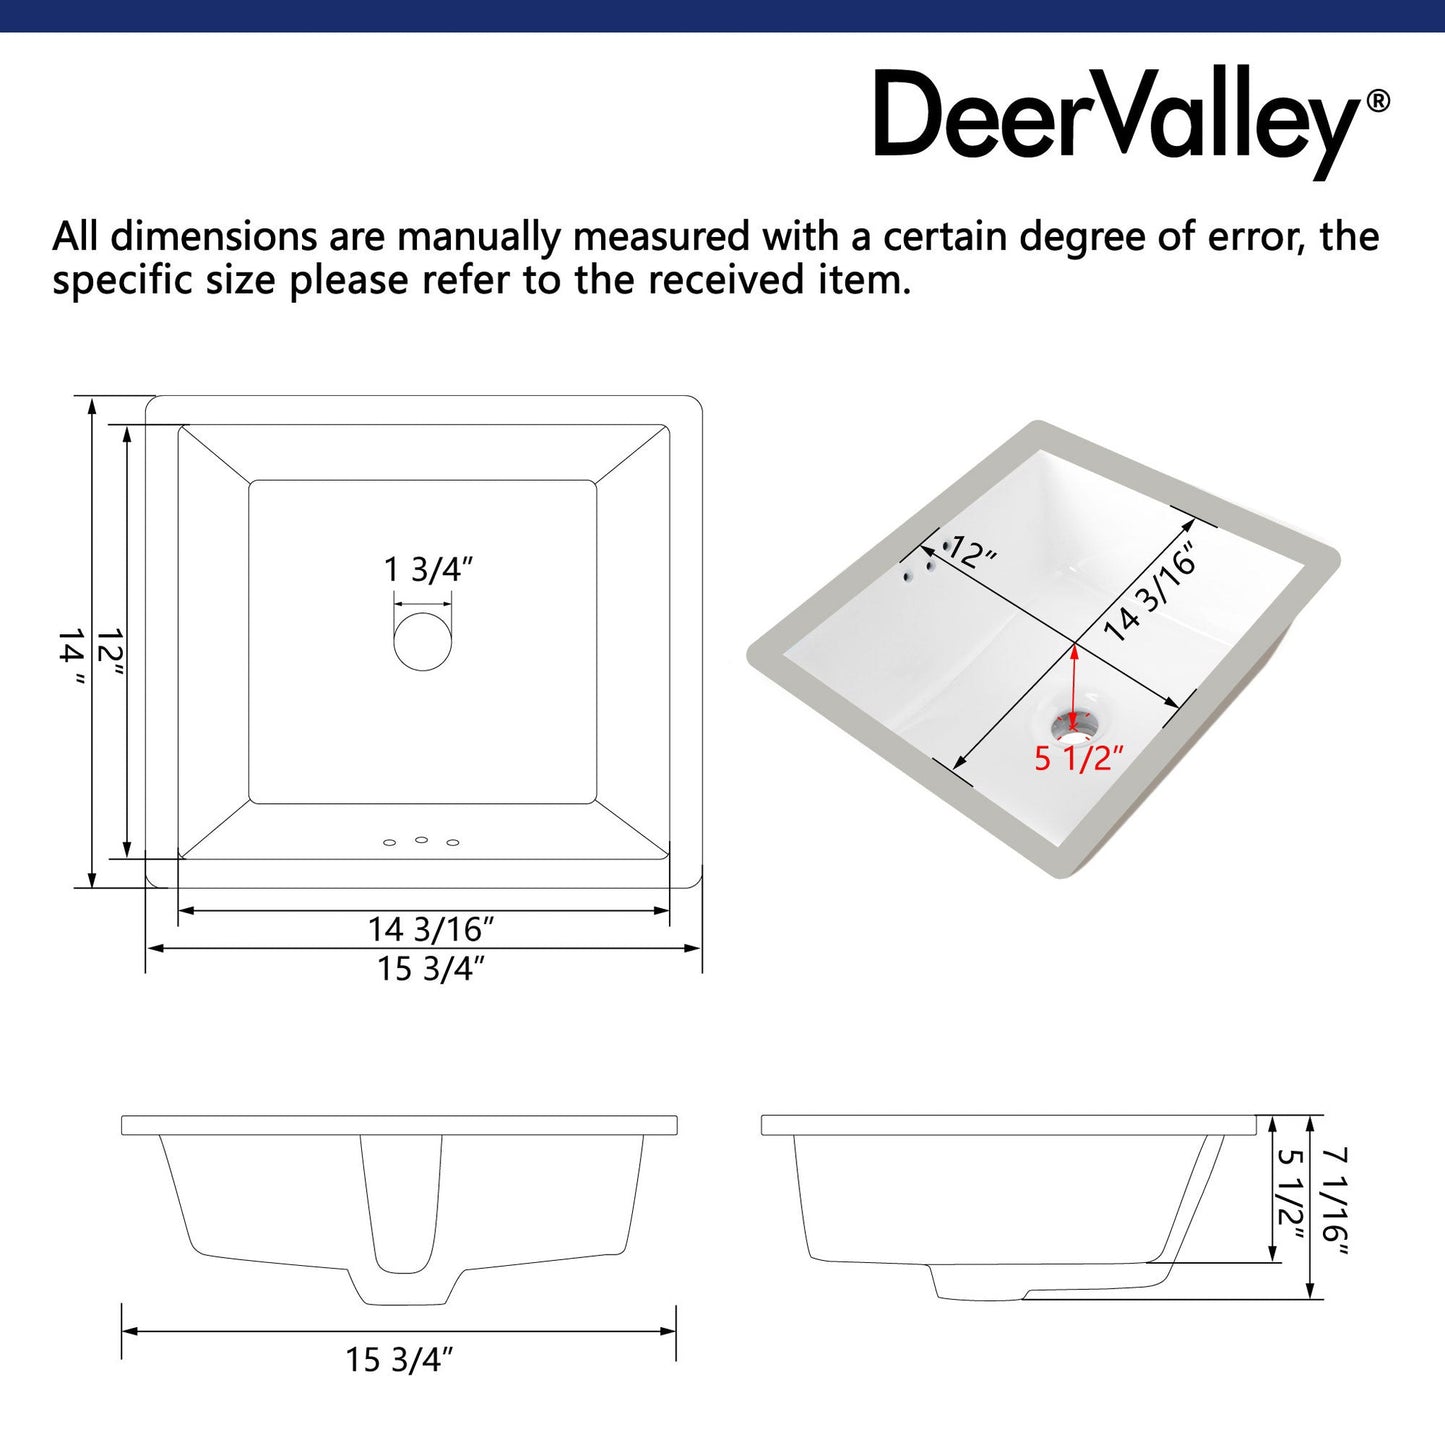 DeerValley Ursa 16" x 14" Rectangular White Undermount Bathroom Sink With Overflow Hole